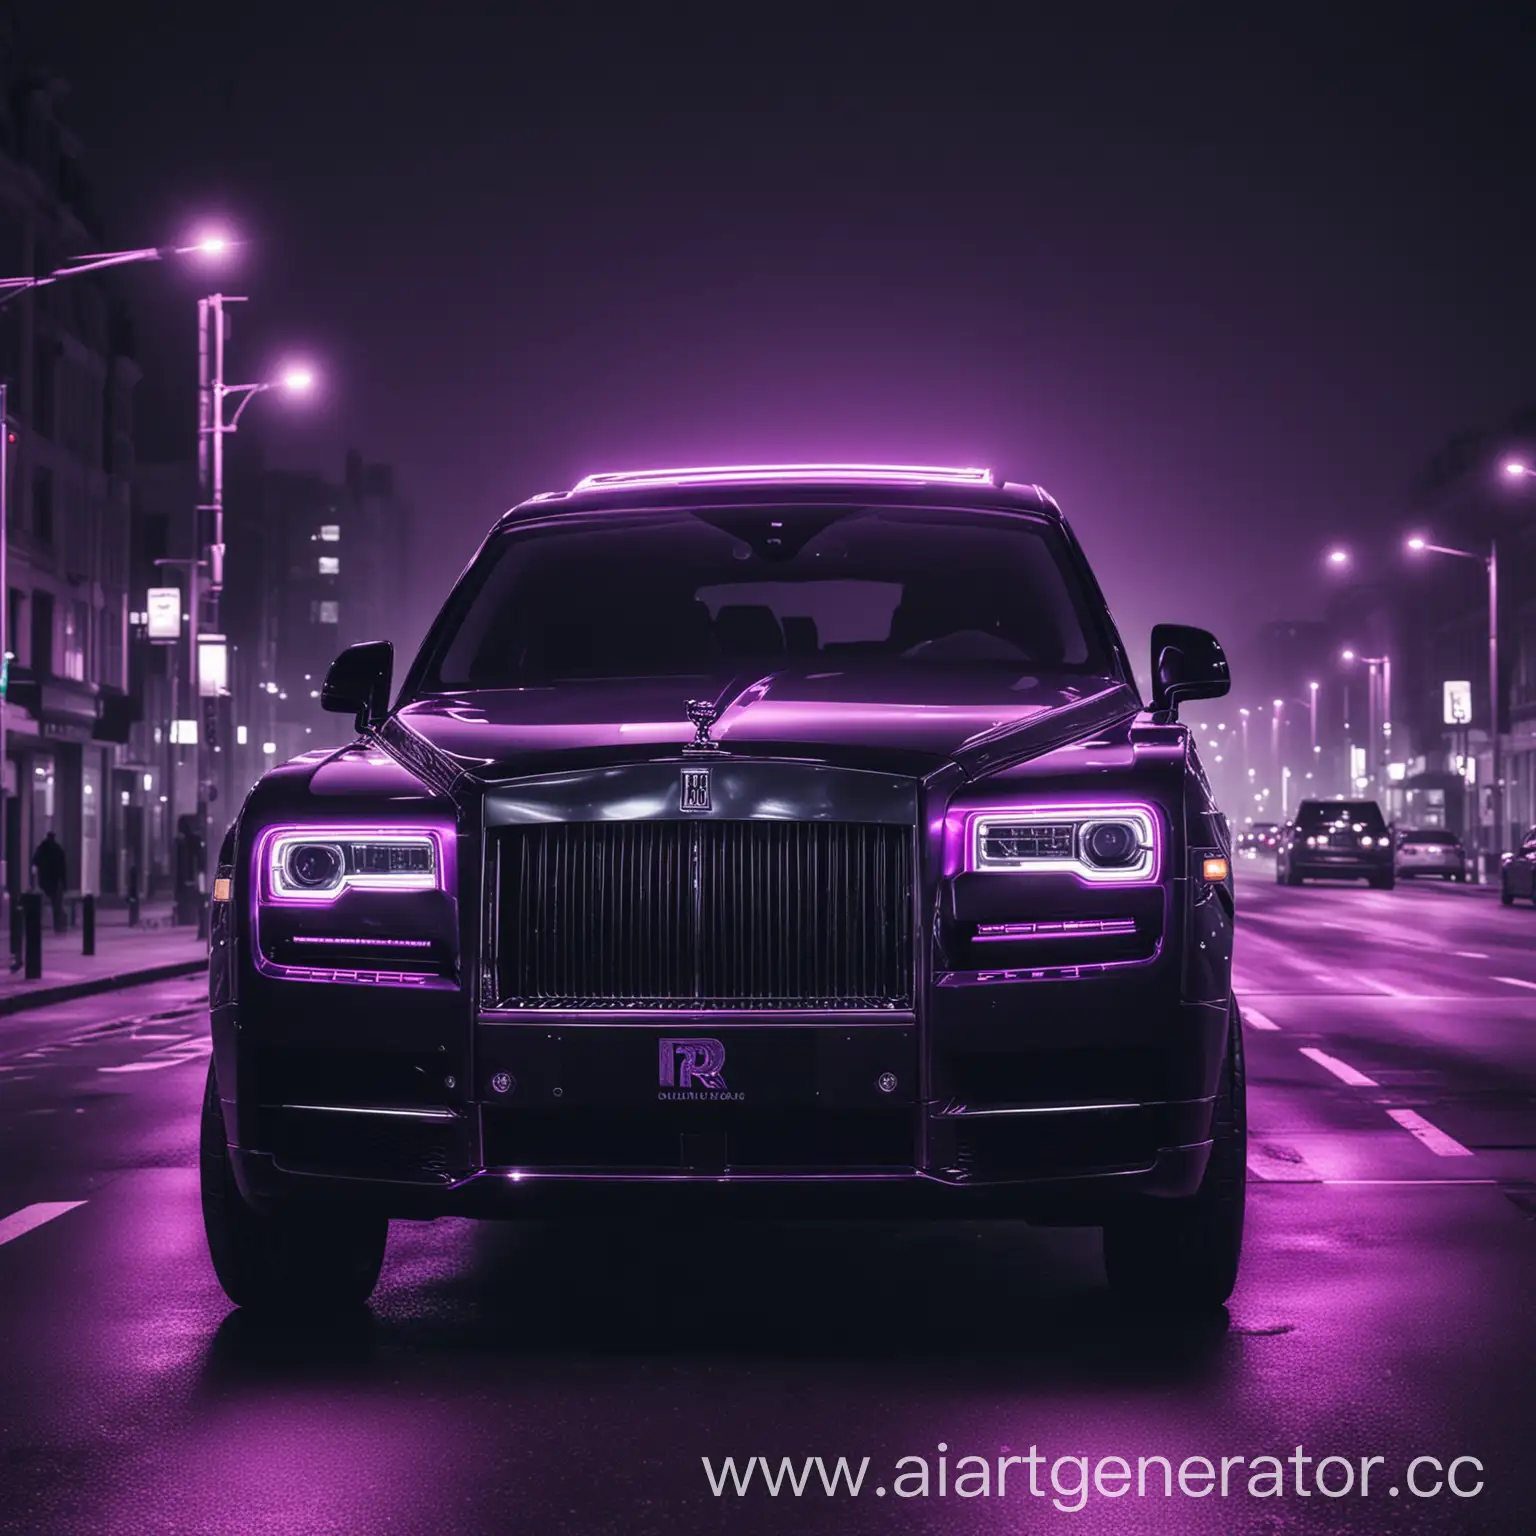 Машина rolls royce cullinan черного цвета стоит на светофоре ночью. Красивая неоновая стилизация с фиолетовым оттенком, высокое качество